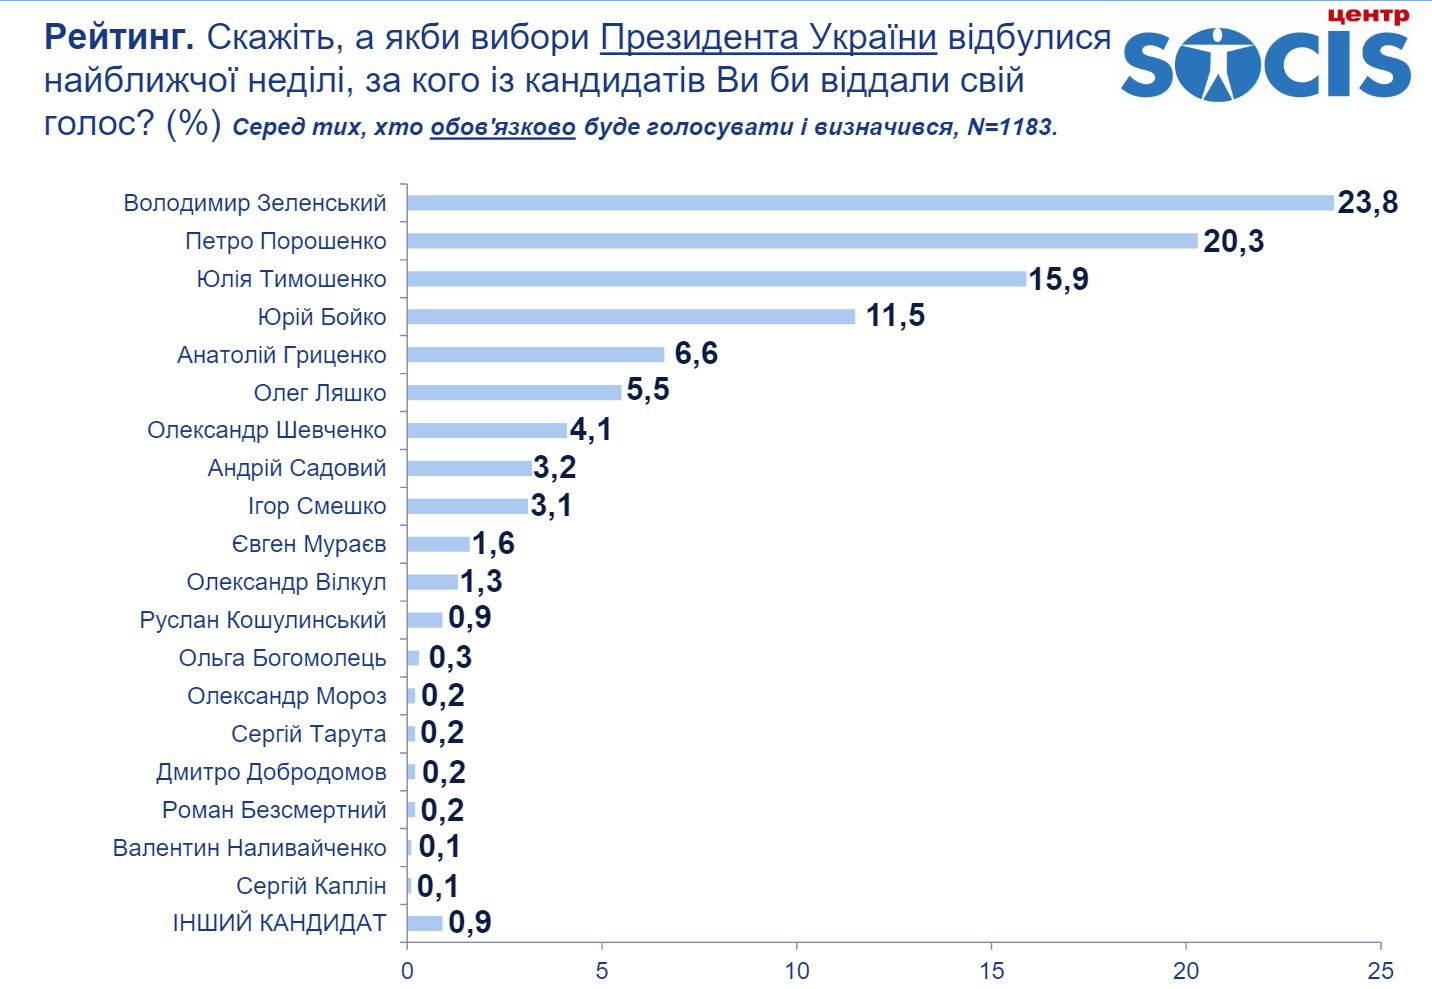 Опрос Социс: разрыв между Зеленским и Порошенко - 3%